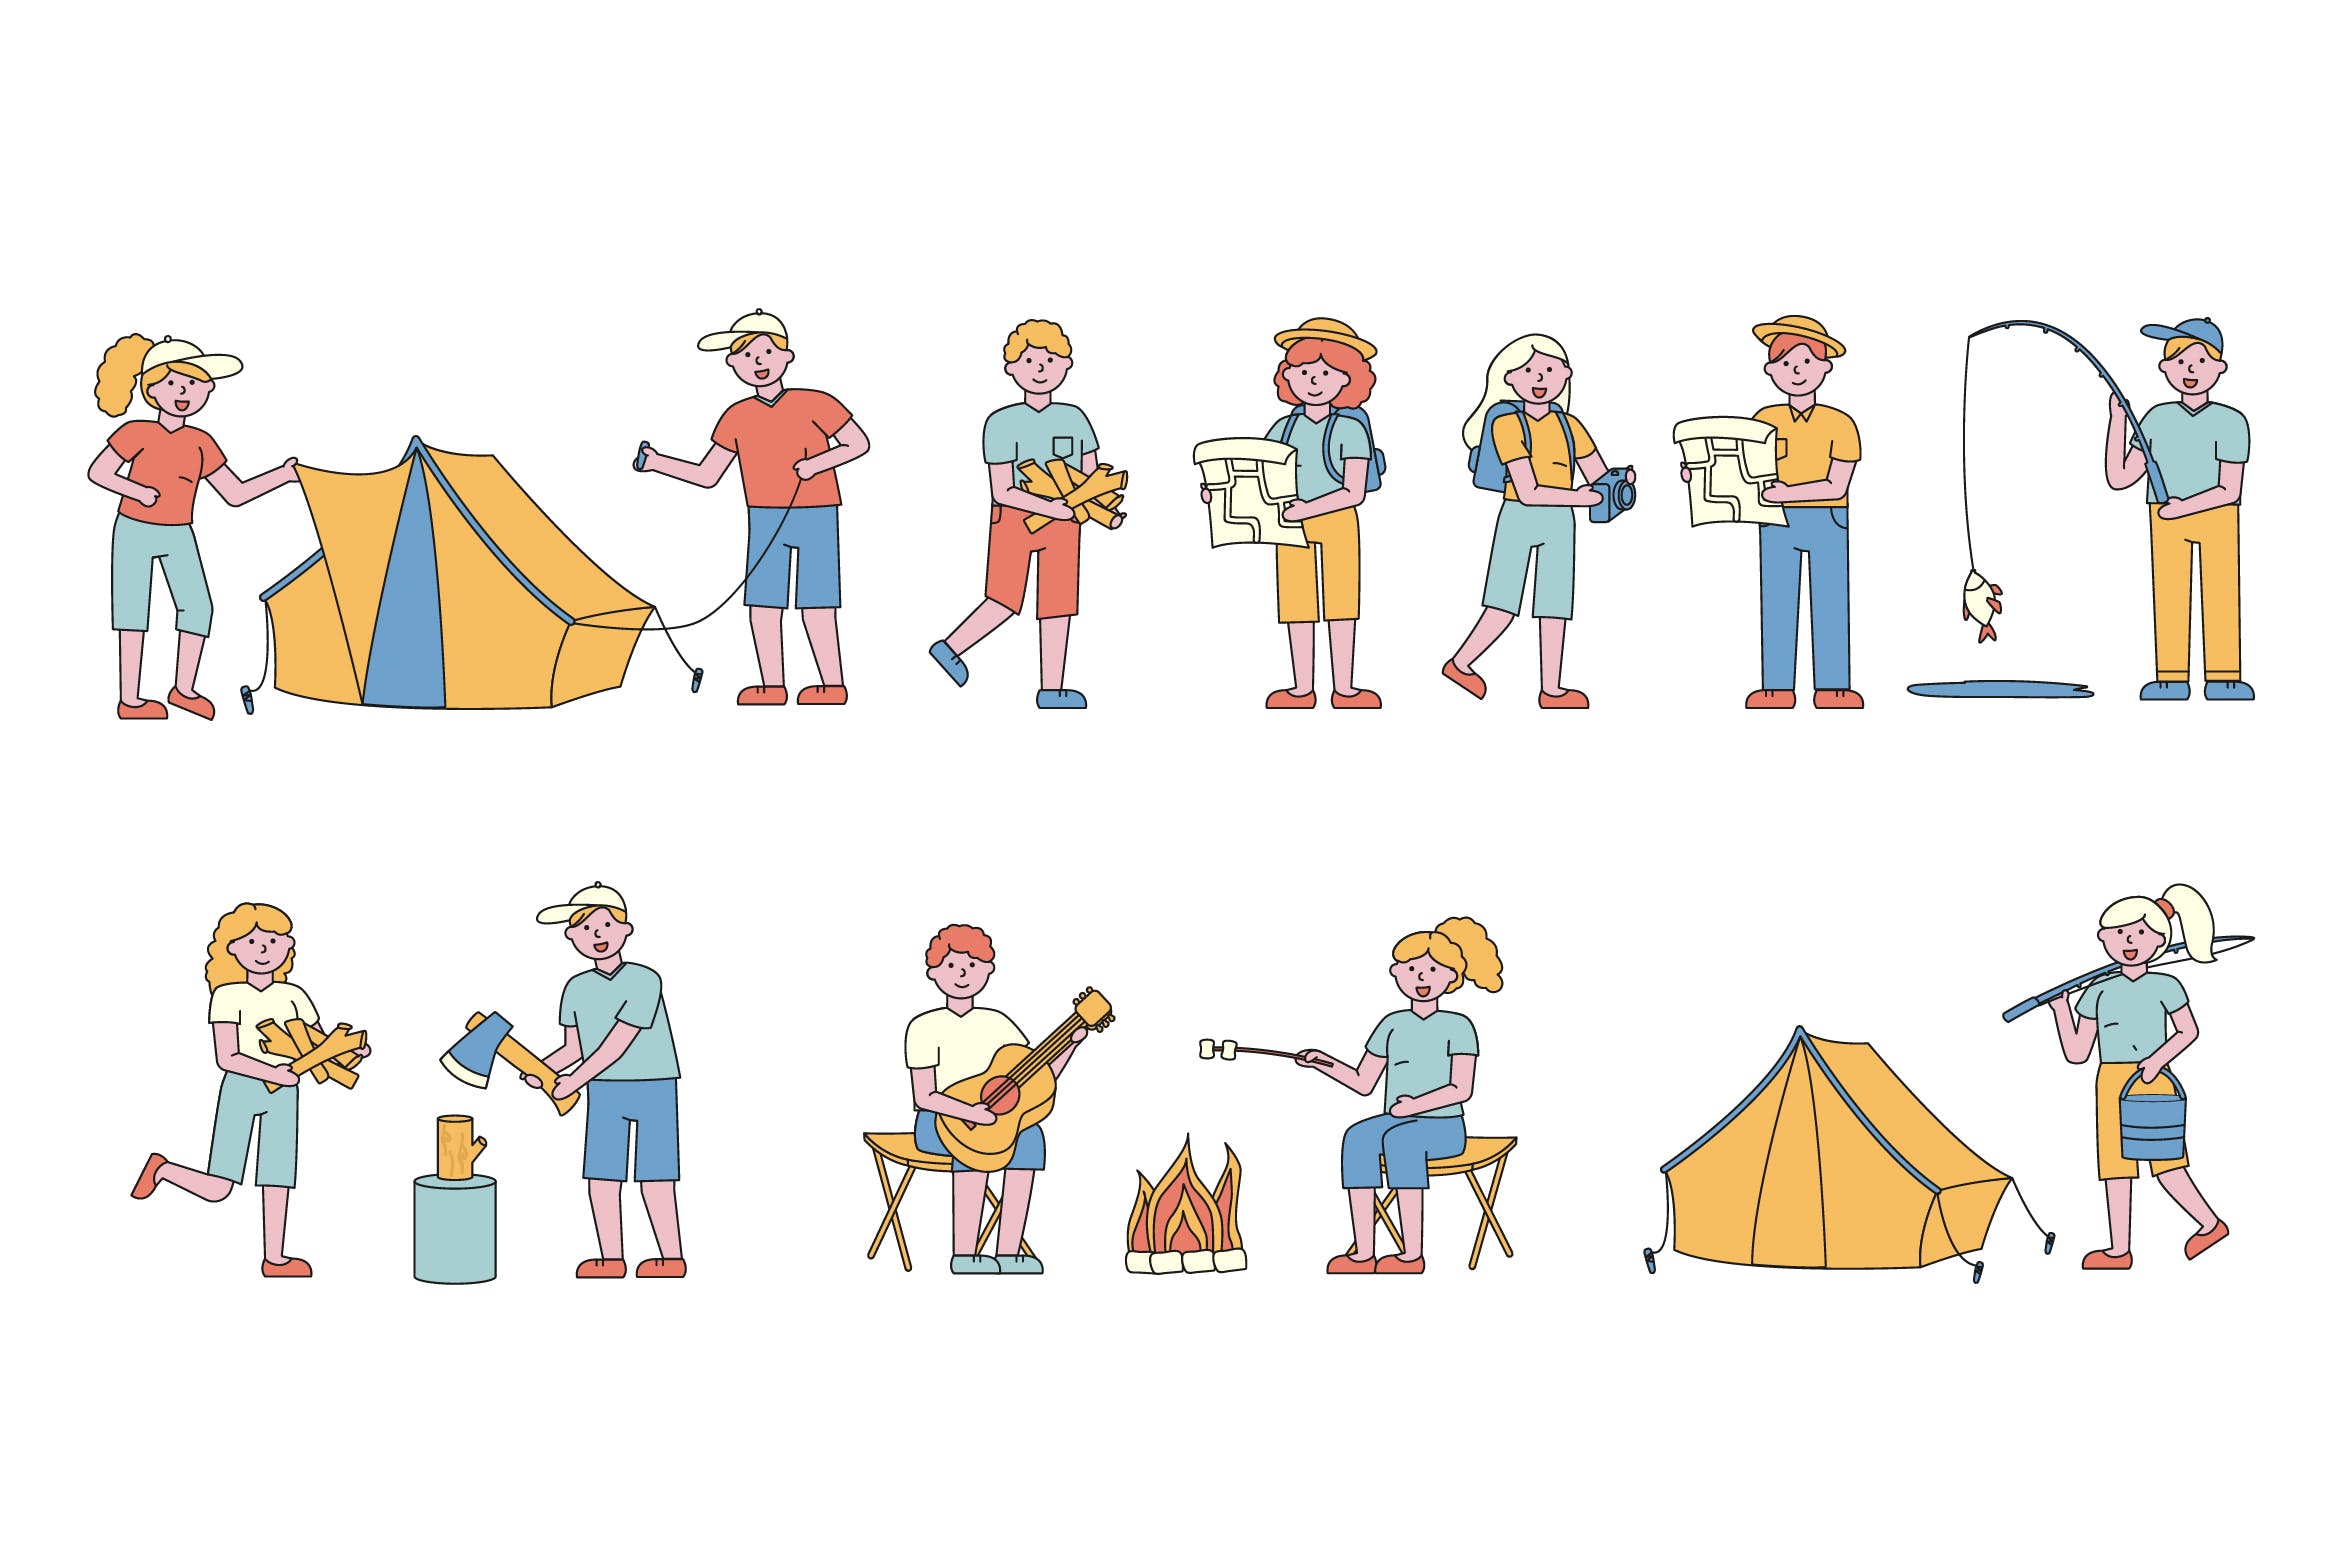 野营户外运动主题人物形象线条艺术矢量插画16图库精选素材 Campers Lineart People Character Collection插图